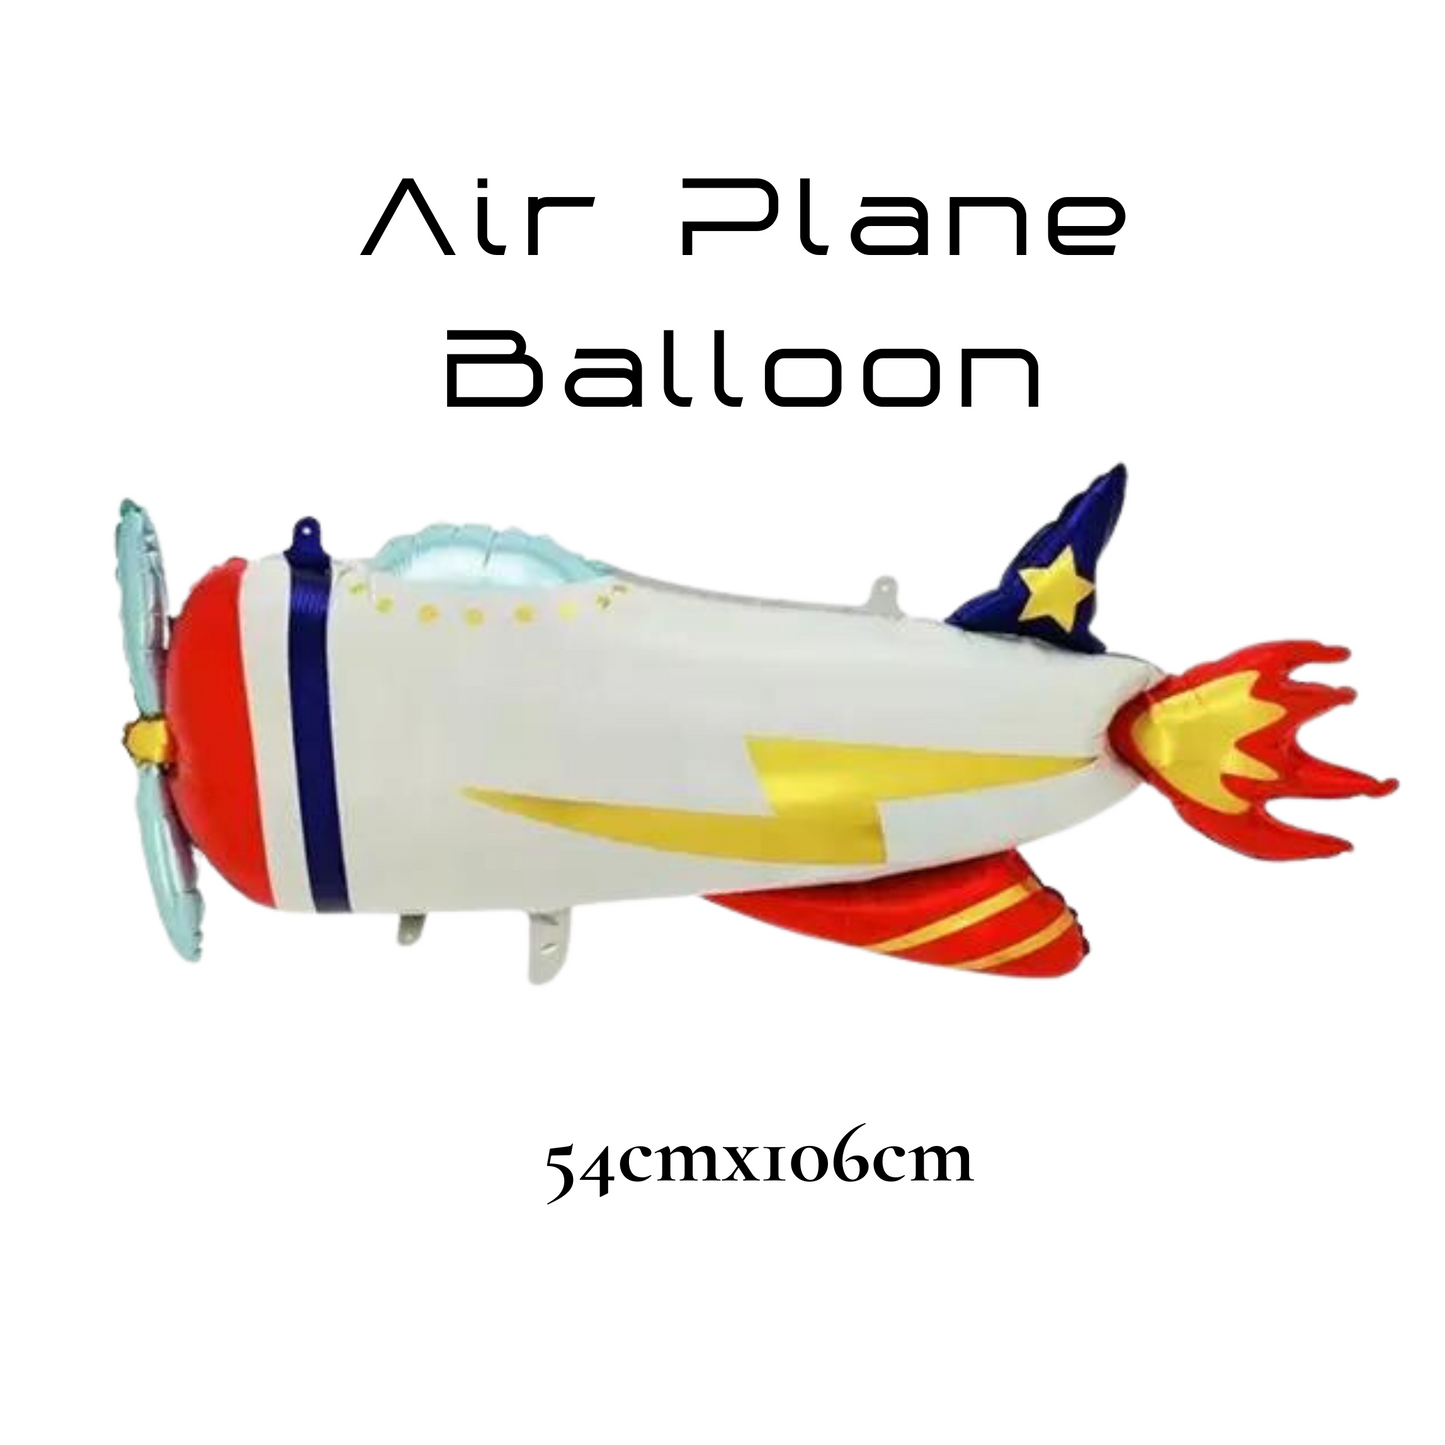 Race Car Balloon Air Plane Balloon Racing Themed Balloons Plane Balloon Aircraft Balloon